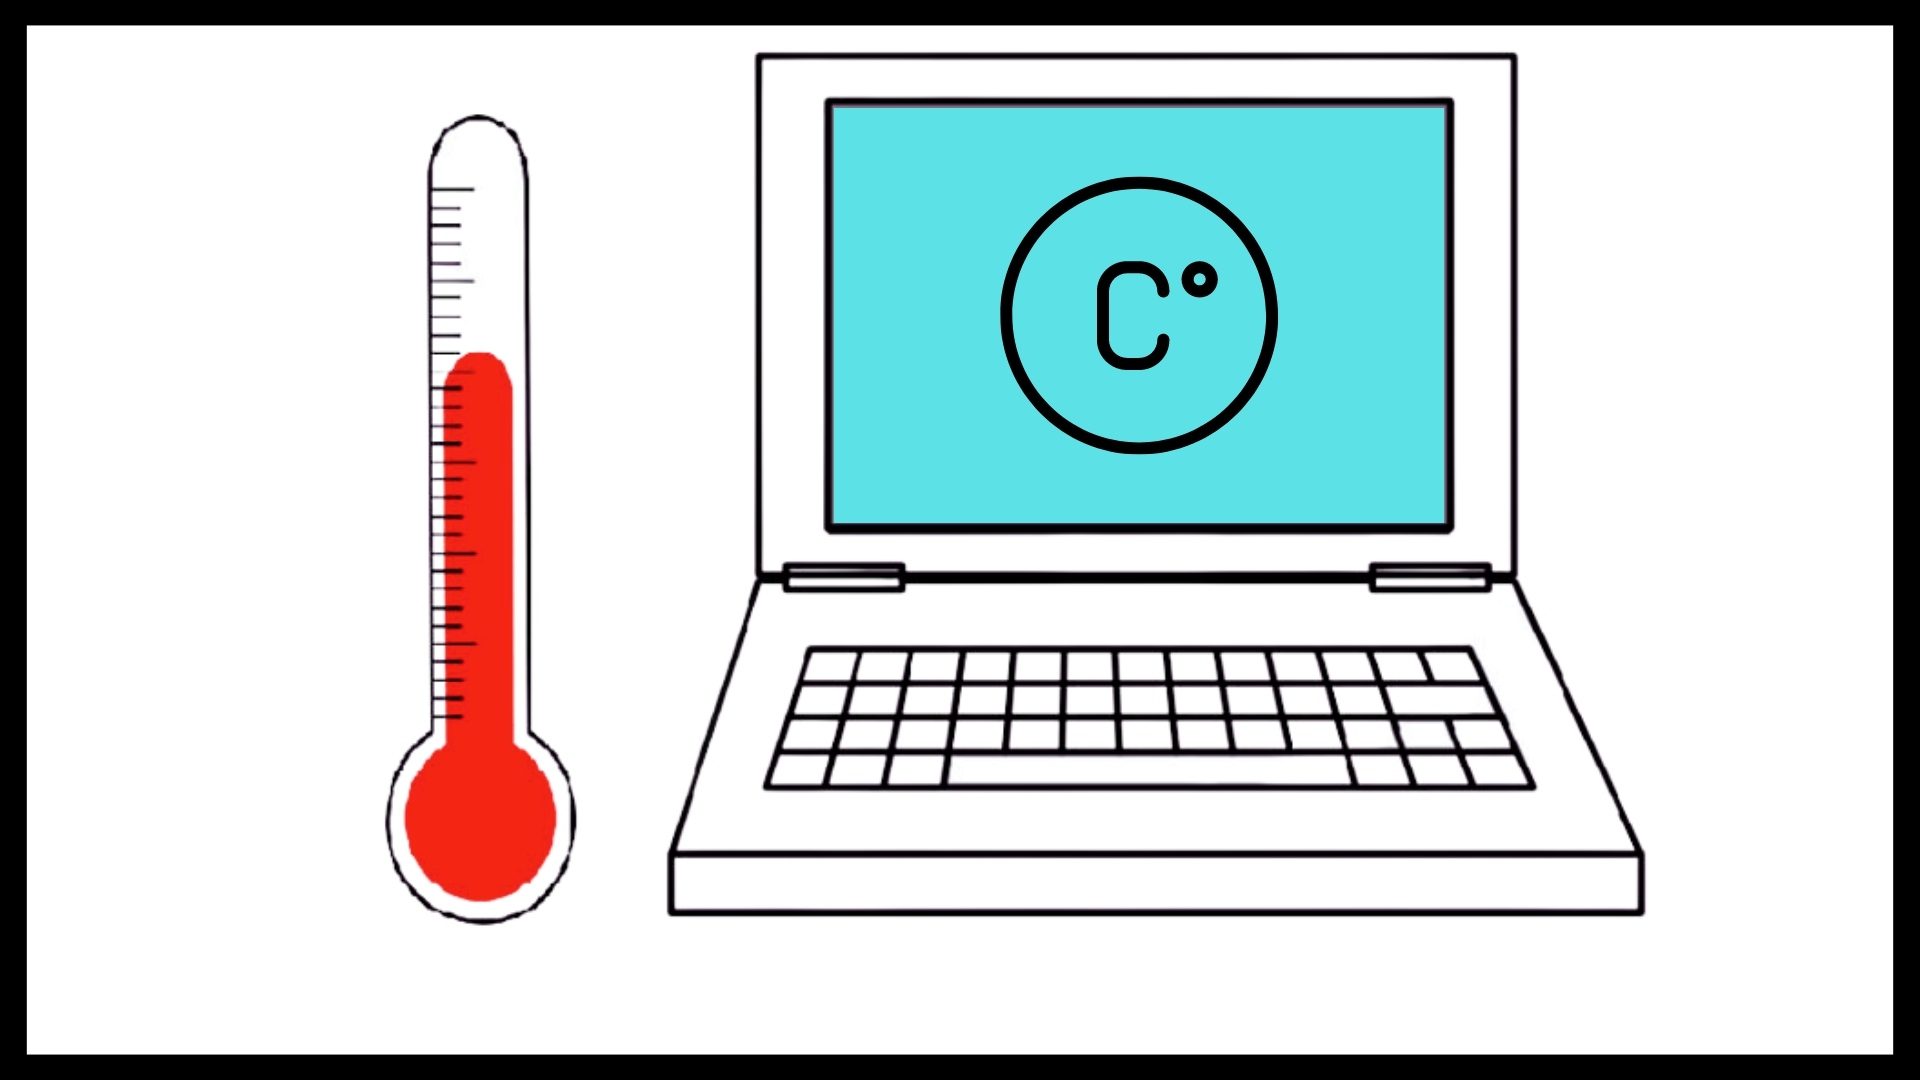 Luôn giữ cho laptop hoạt động ở nhiệt độ ổn định